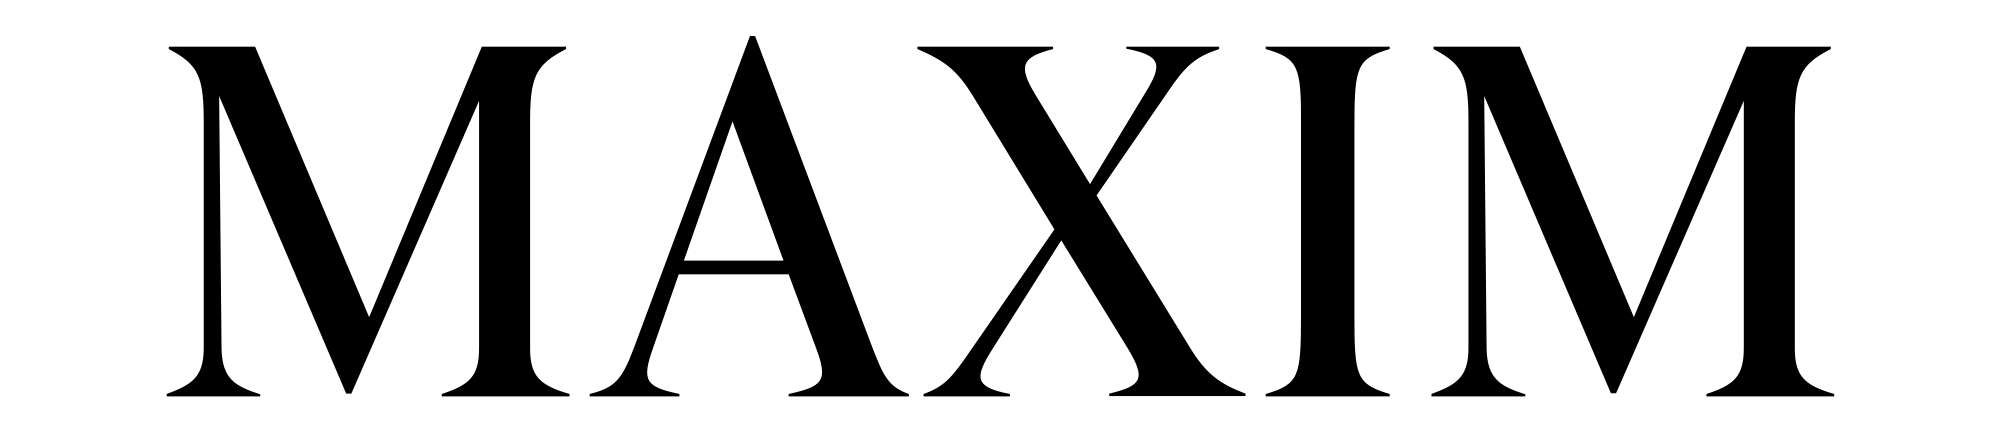 Maxim Logo - Maxim Magazine Logo.svg